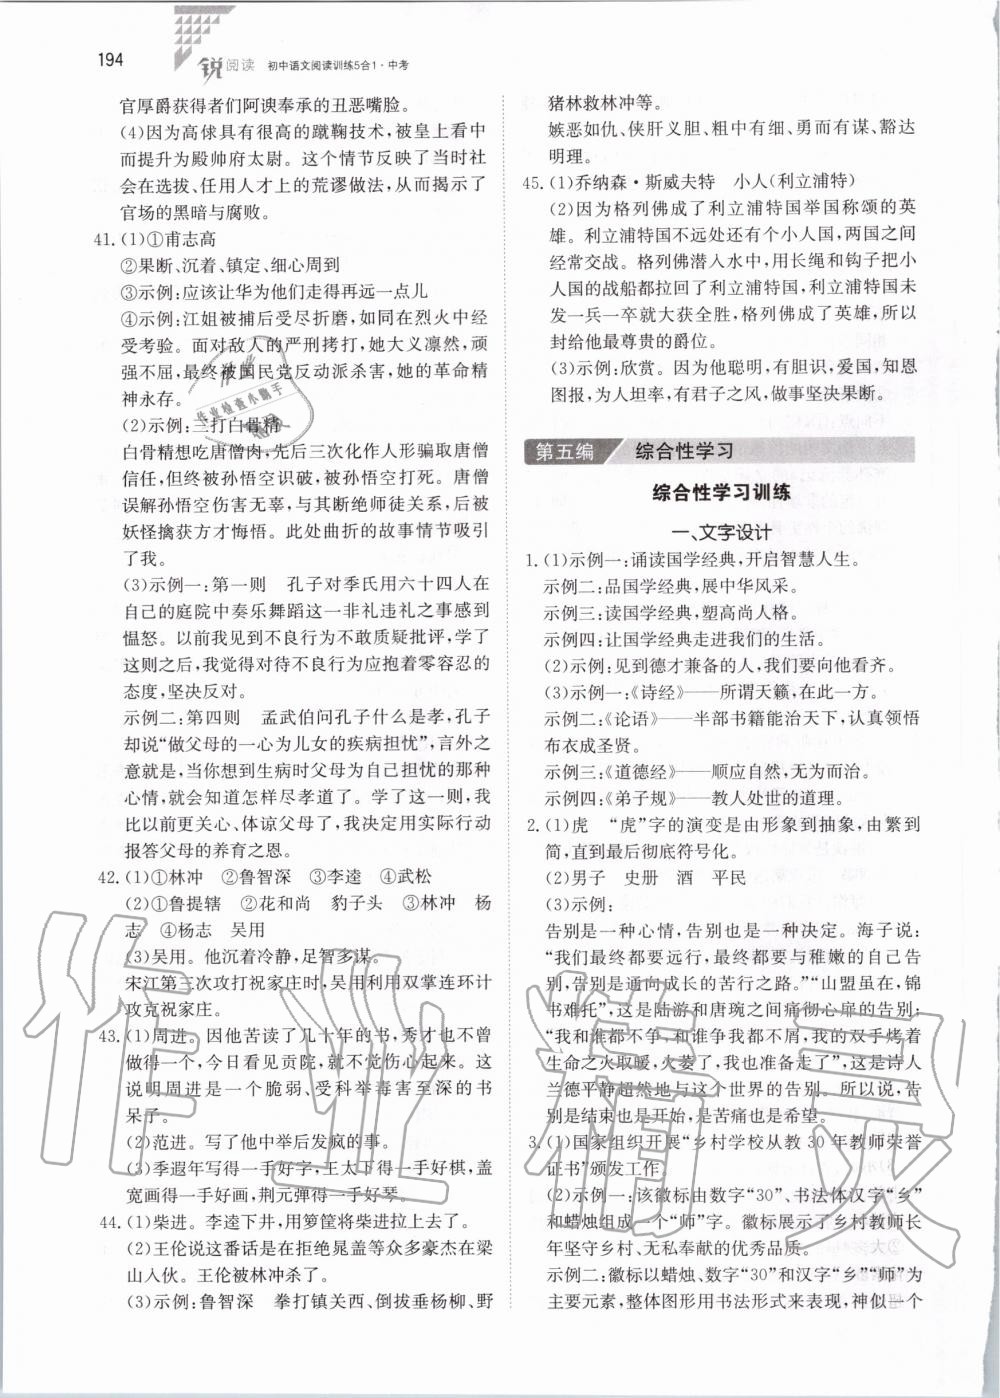 2019年锐阅读初中语文阅读训练5合1中考 第40页